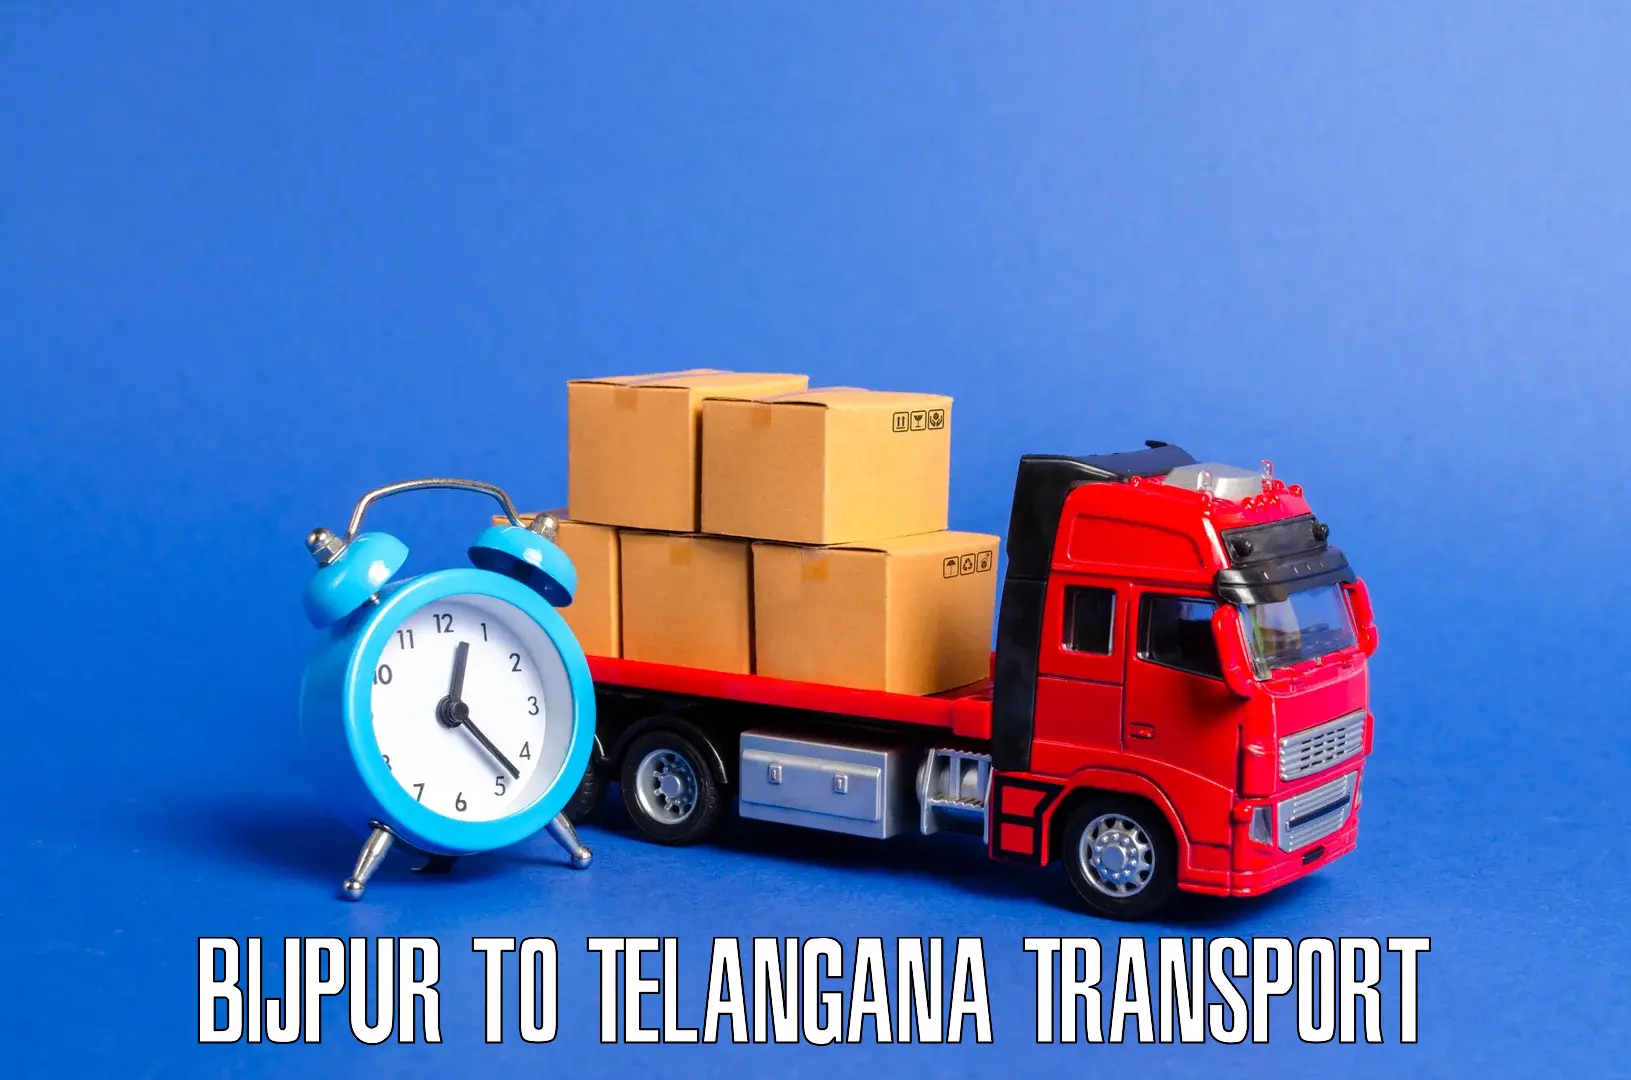 Transport services Bijpur to Patancheru